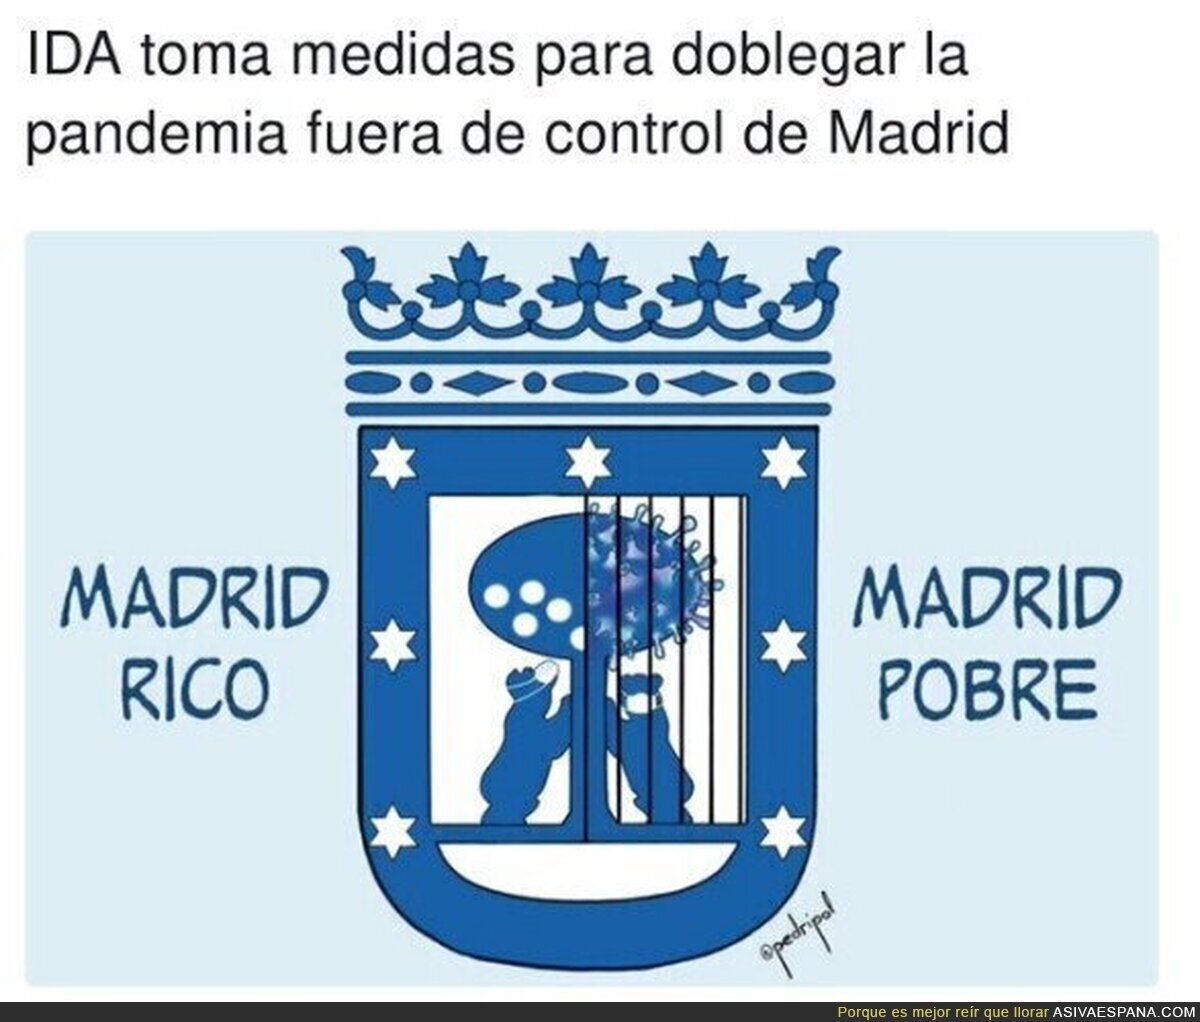 En el Madrid rico hay virus igual, lo que no hay son rejas